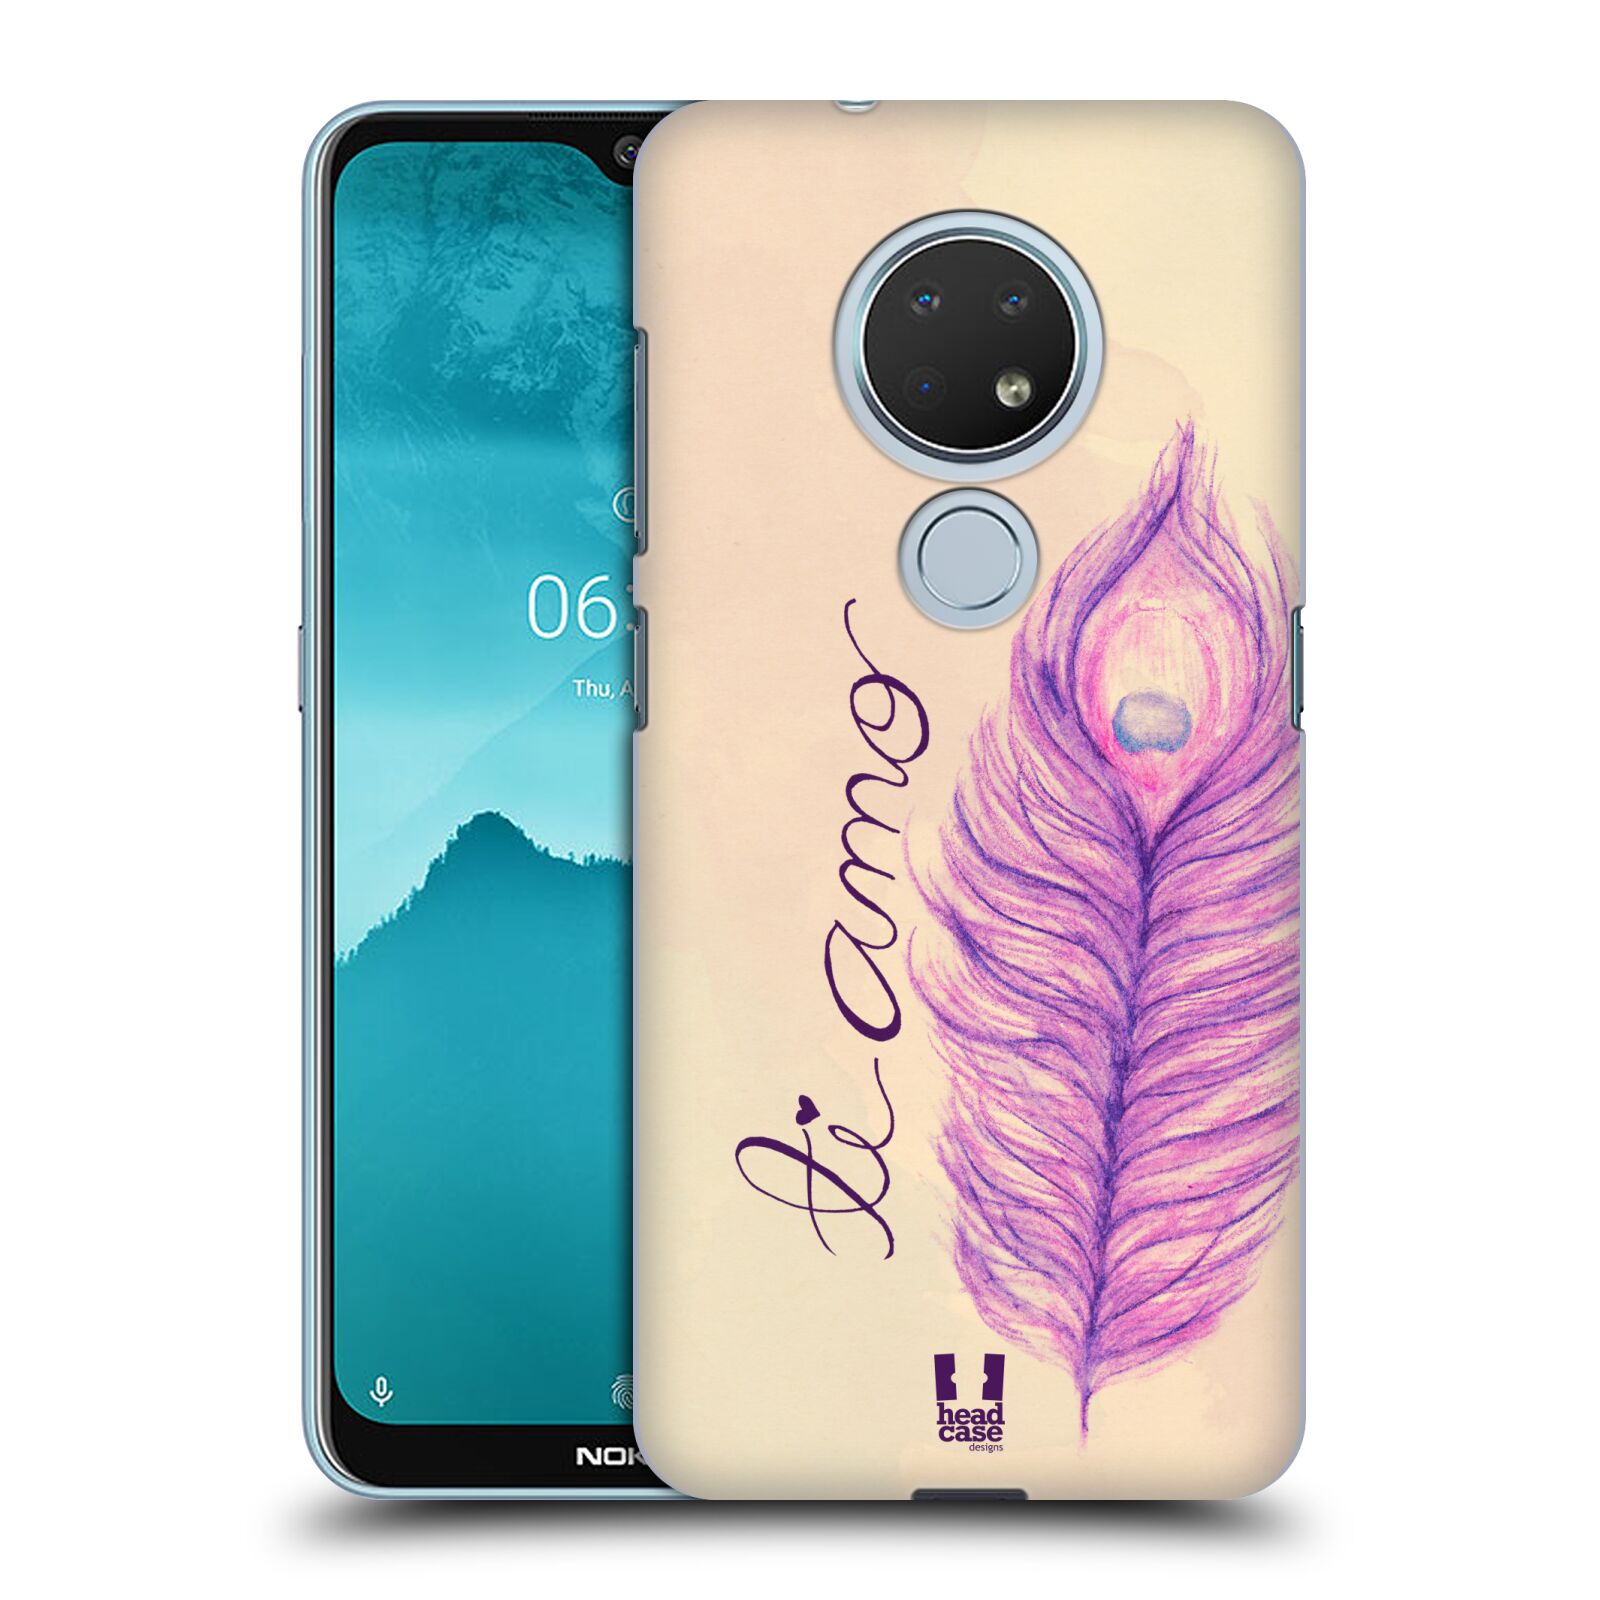 Pouzdro na mobil Nokia 6.2 - HEAD CASE - vzor Paví pírka barevná FIALOVÁ TI AMO